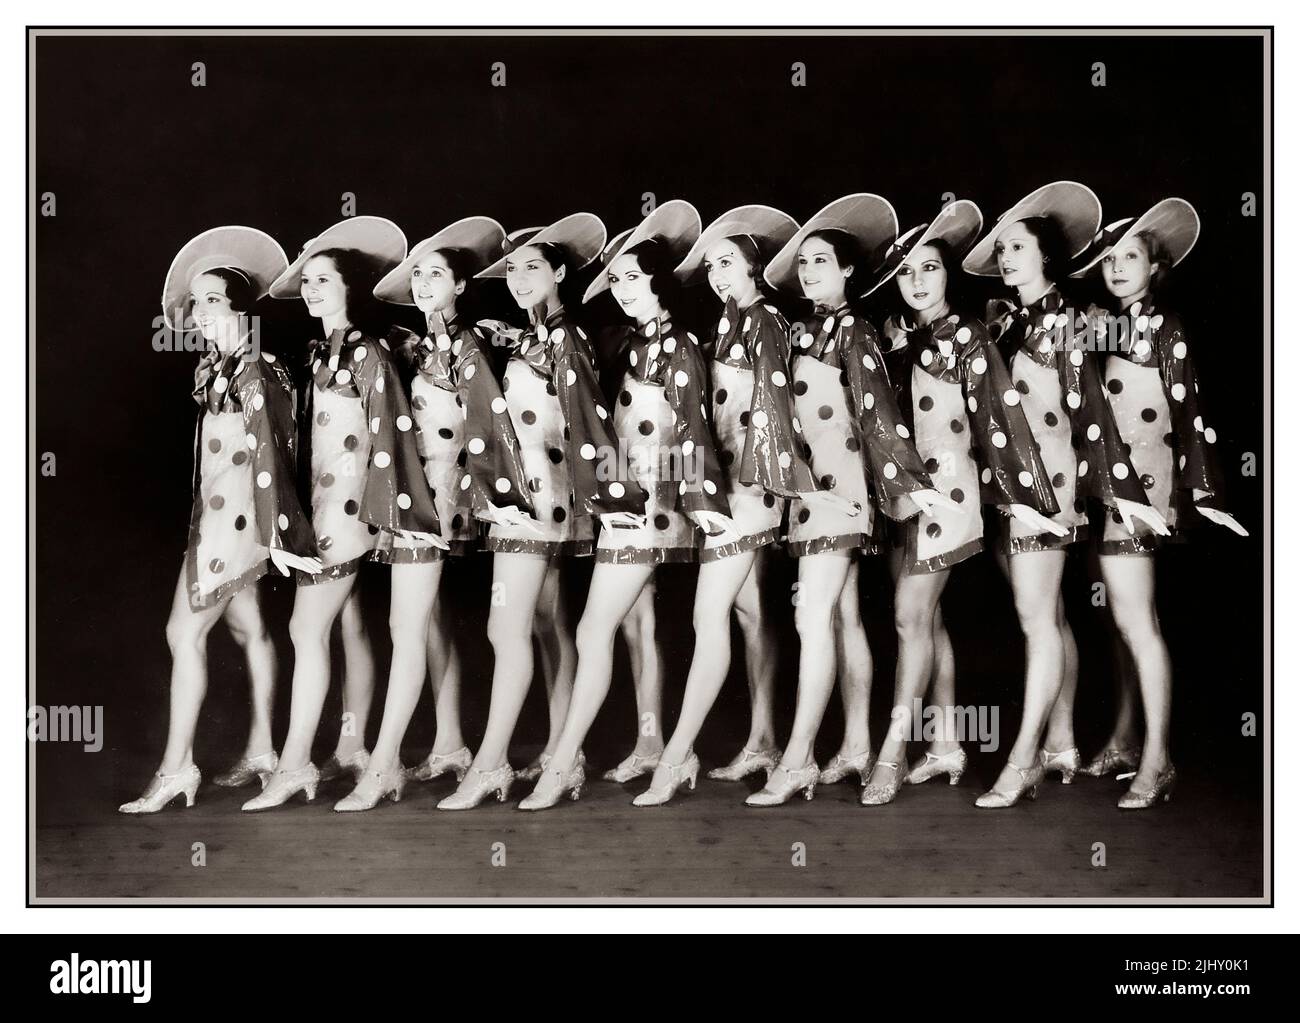 1930s Folies Bergere Showgirls posan en el escenario para una fotografía promocional. Todas las hermosas chicas seleccionadas a mano, incluida la famosa bailarina búlgara Feo Mustakova, bailando para uno de los espectáculos de cabaret Bell Epoque más importantes de París, espectáculos de baile de música de la sala de espectáculos de cabaret Bell Epoque. Rue Richer París Francia 1934 Foto de stock